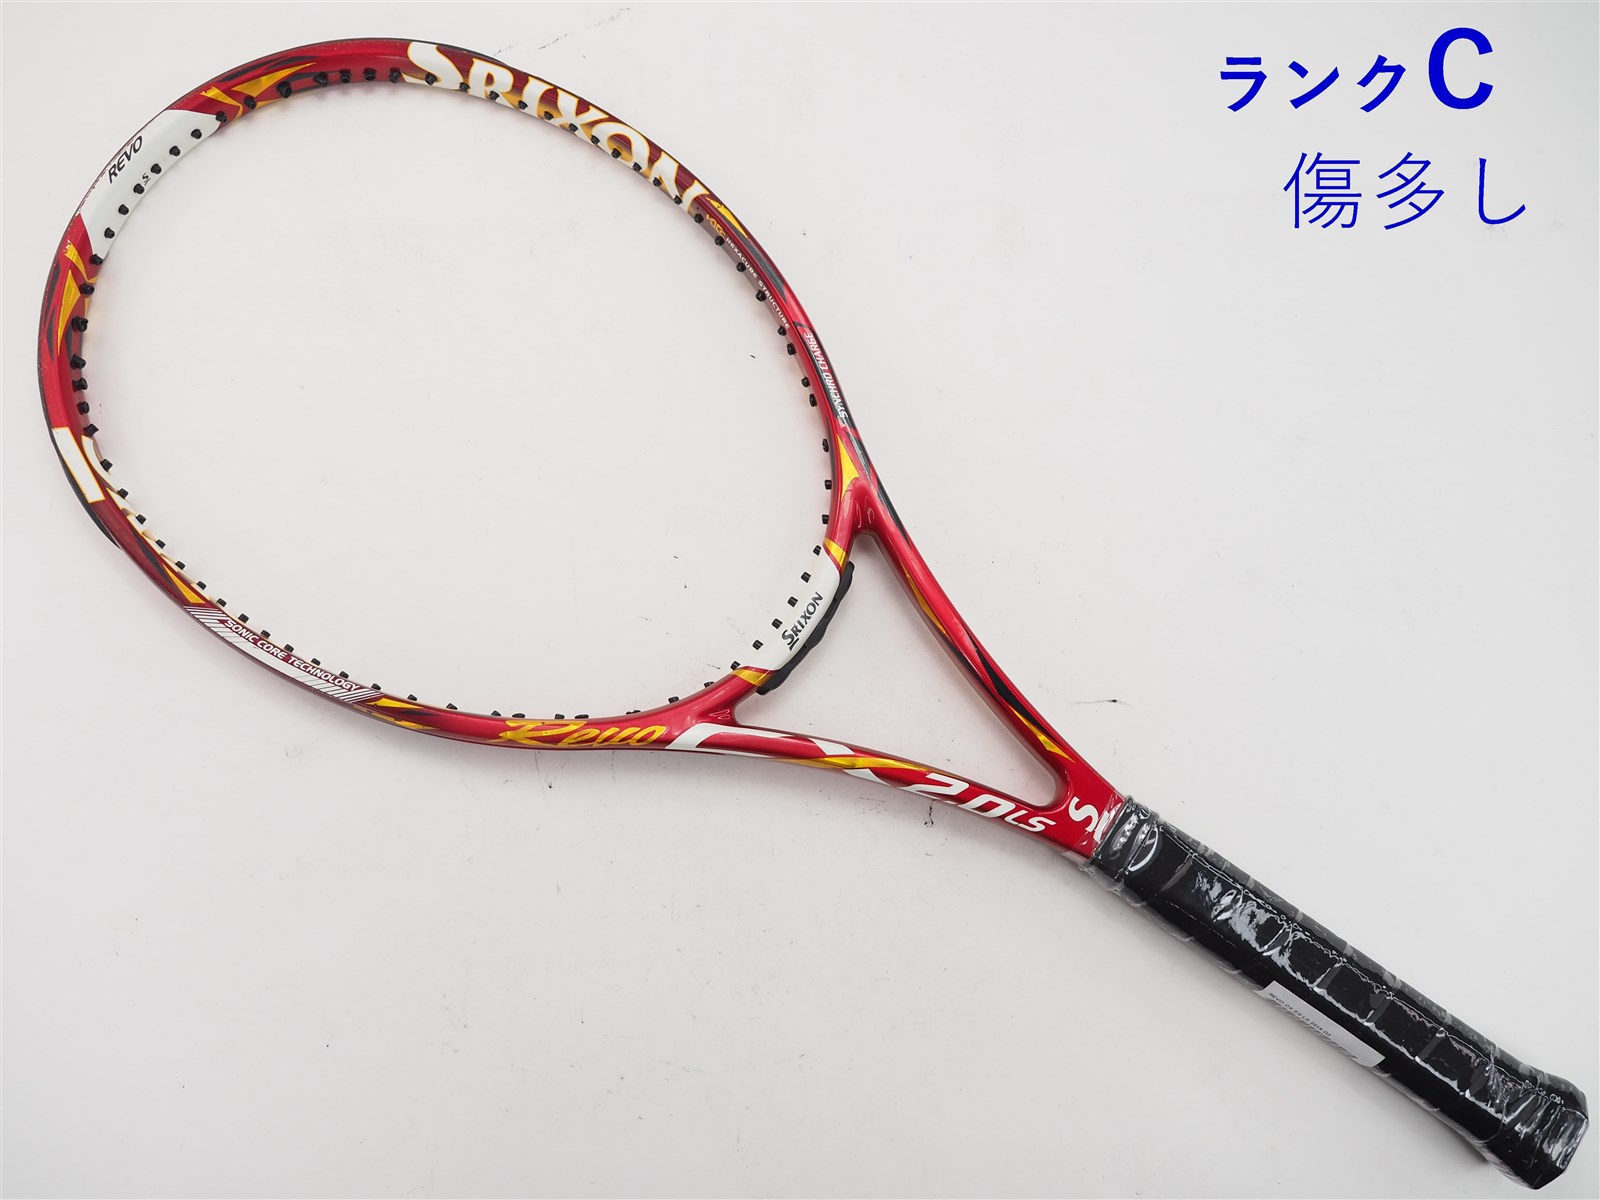 テニスラケット スリクソン レヴォ シーエックス 2.0 ツアー 2015年モデル (G3)SRIXON REVO CX 2.0 TOUR 2015306ｇ張り上げガット状態